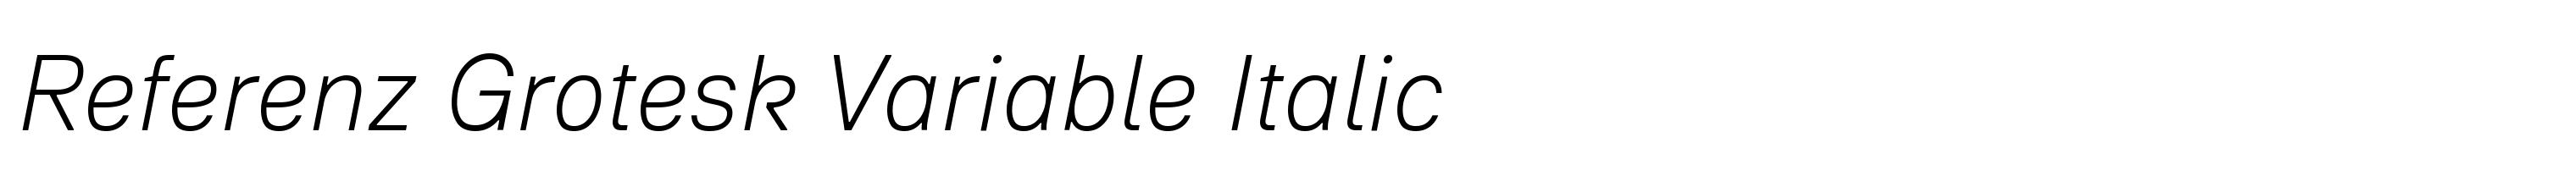 Referenz Grotesk Variable Italic